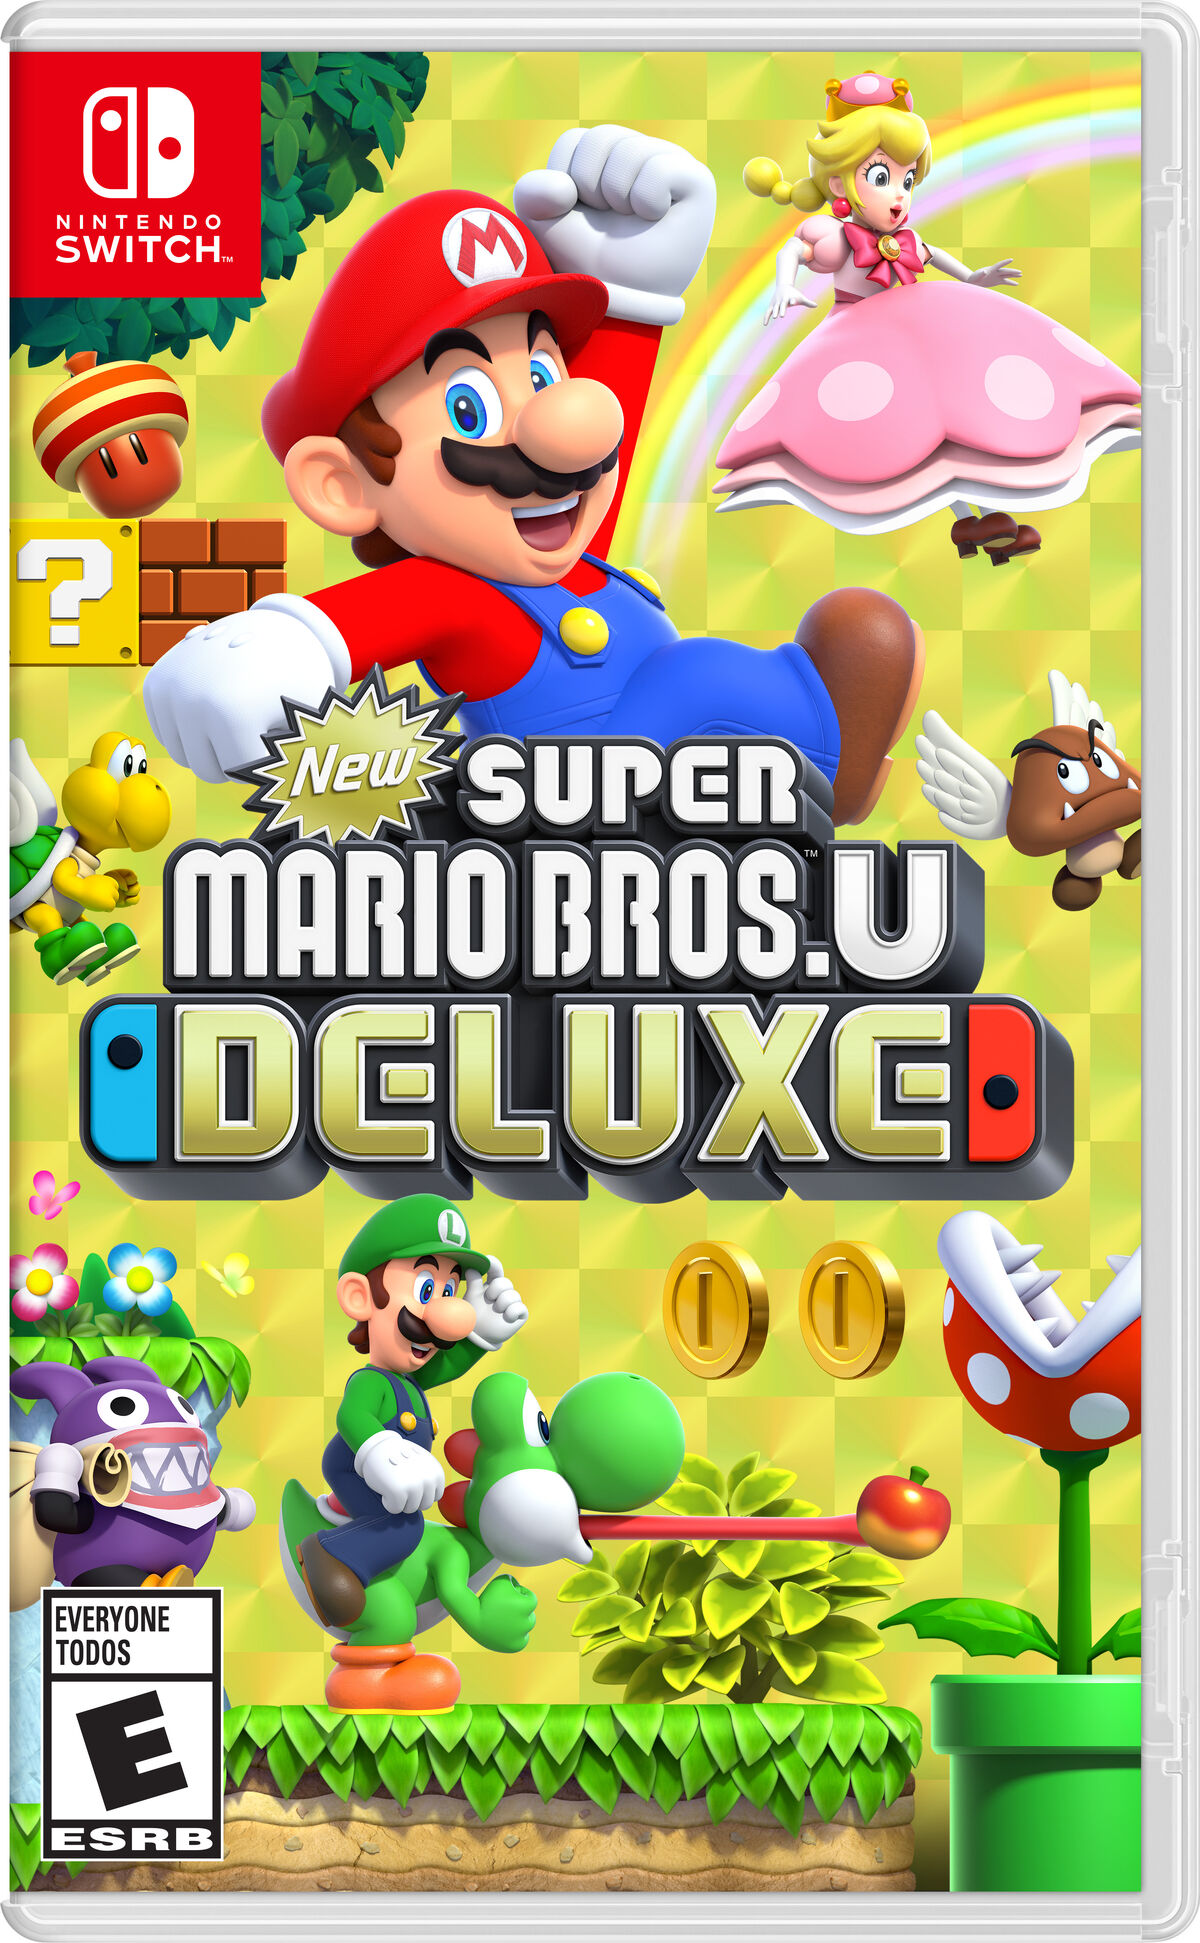 2023 The Super Mario Bros. Movie Watch Online Full Movie Free 2K 2023 14  December 2023